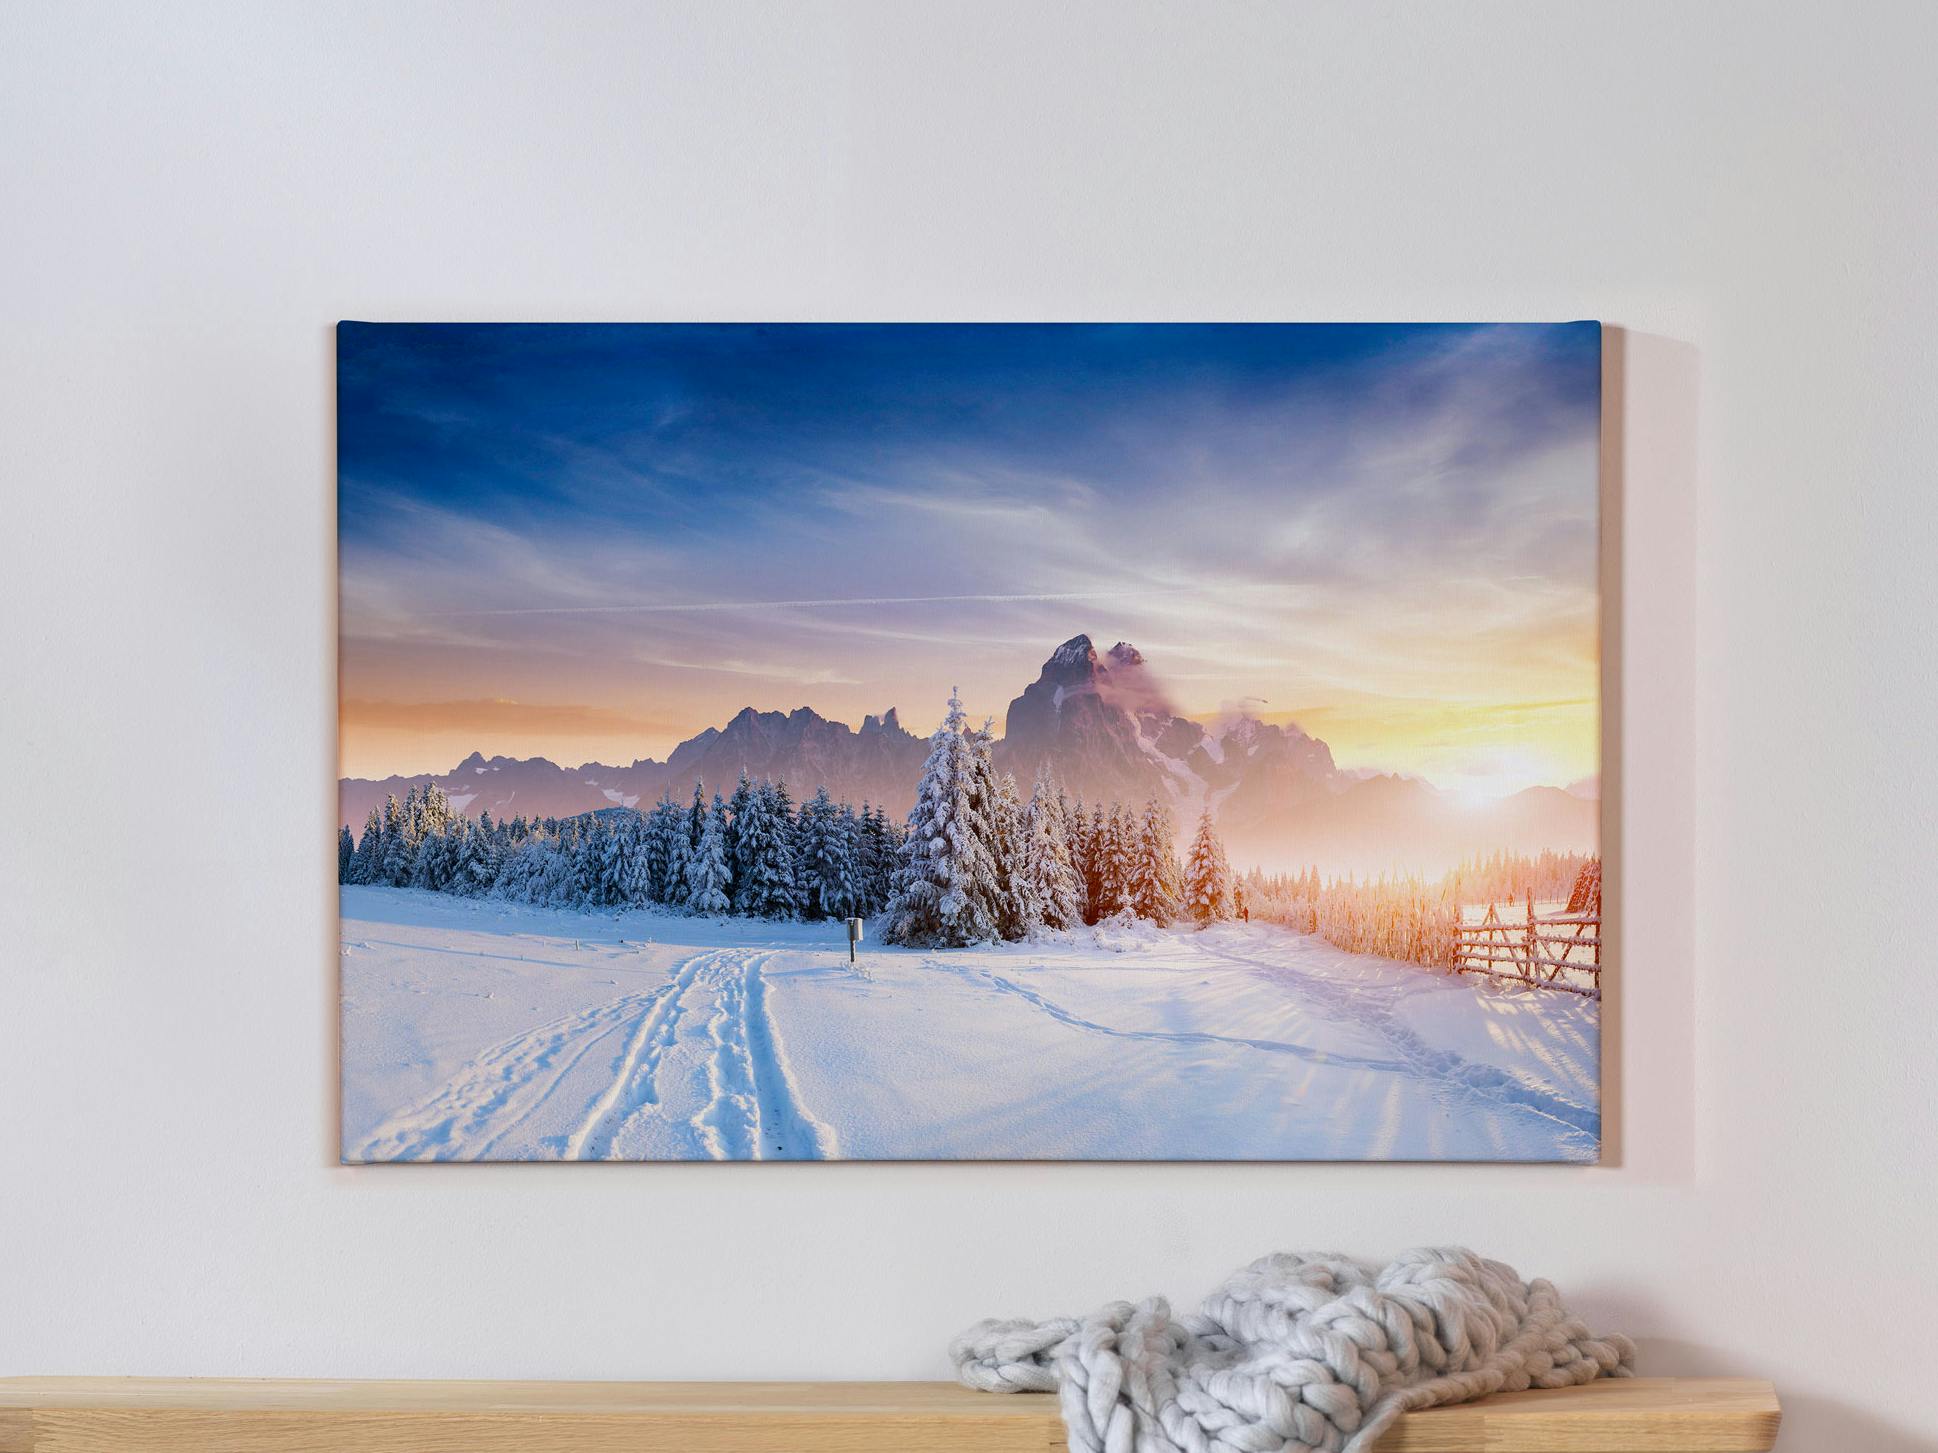 Fotoleinwand mit winterlichem Landschaftsmotiv auf einer grauen Wand und einer davorstehenden Bank mit einer Wolldecke